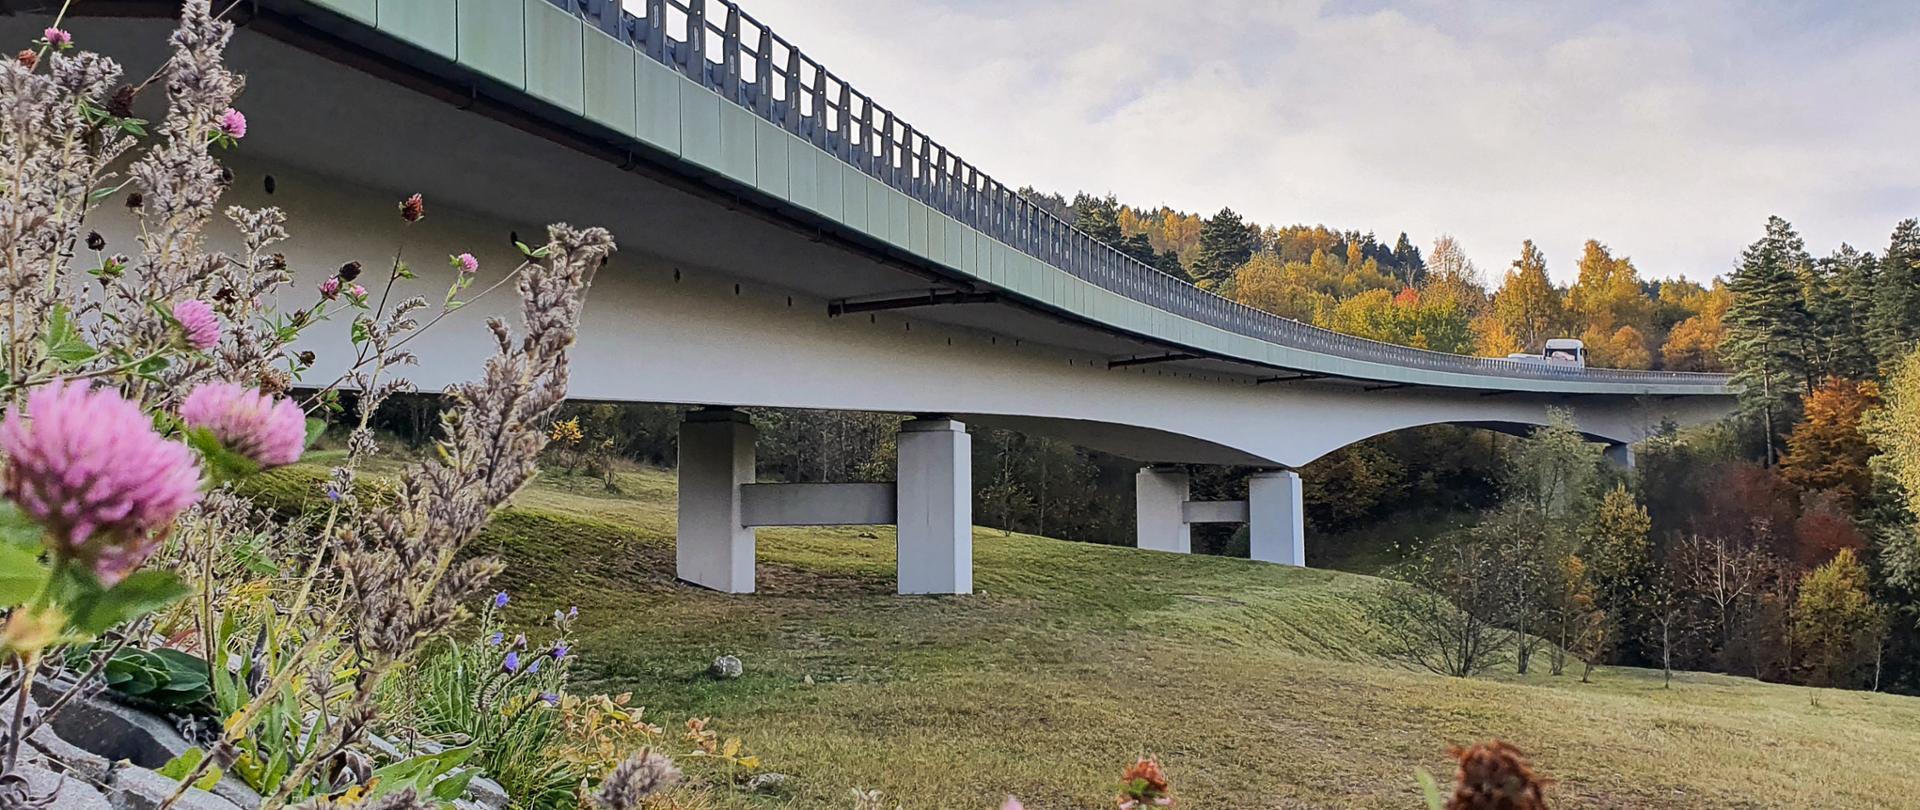 Fotografia mostu z poziomu terenu wykonana jesienią. Most ukształtowany w poziomie podparty podporami ramowymi z betonu zbrojonego. Gzyms mostu został wykonany w kolorze zielonym, ładnie wkomponowując się w krajobraz górski.
